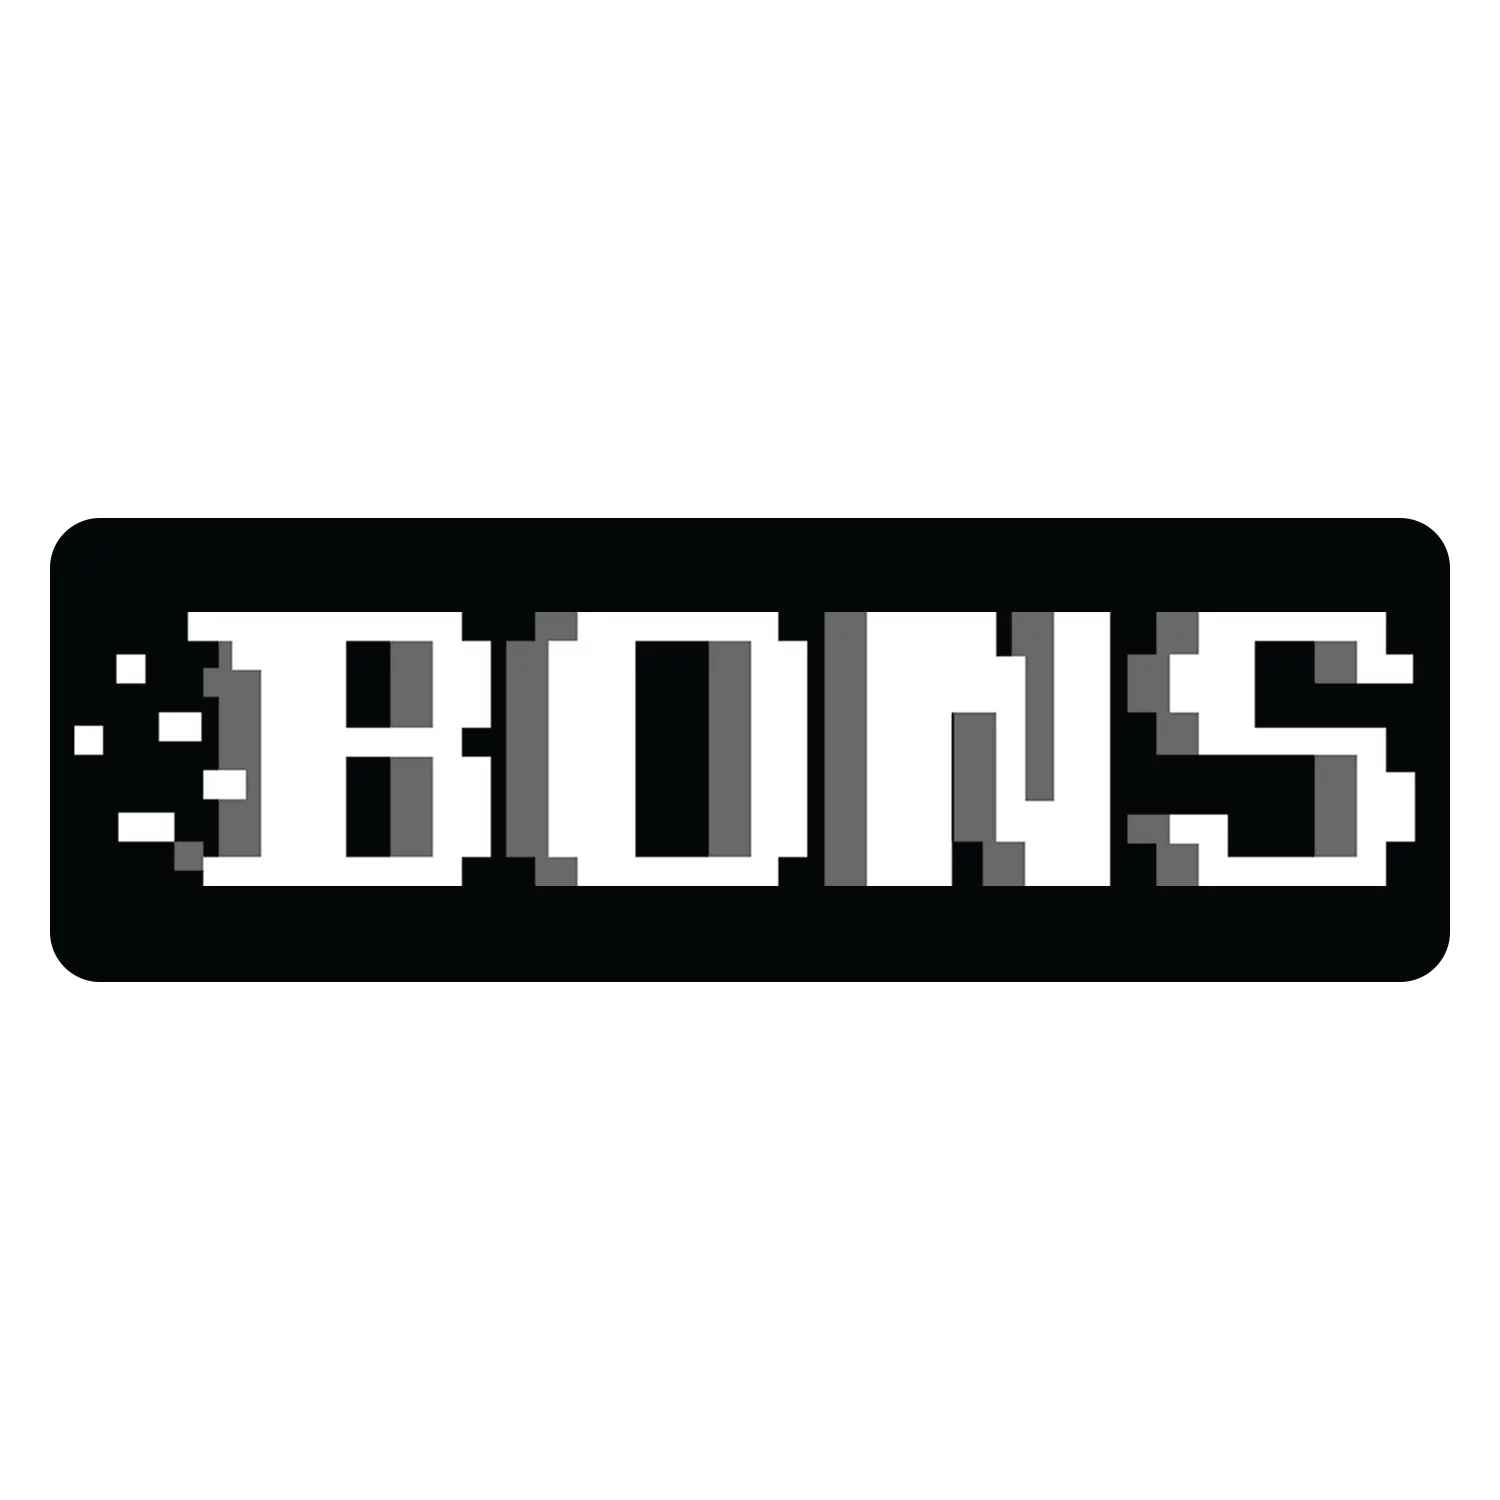 Bons वेबसाइट की विशेषताओं के बारे में जानें।